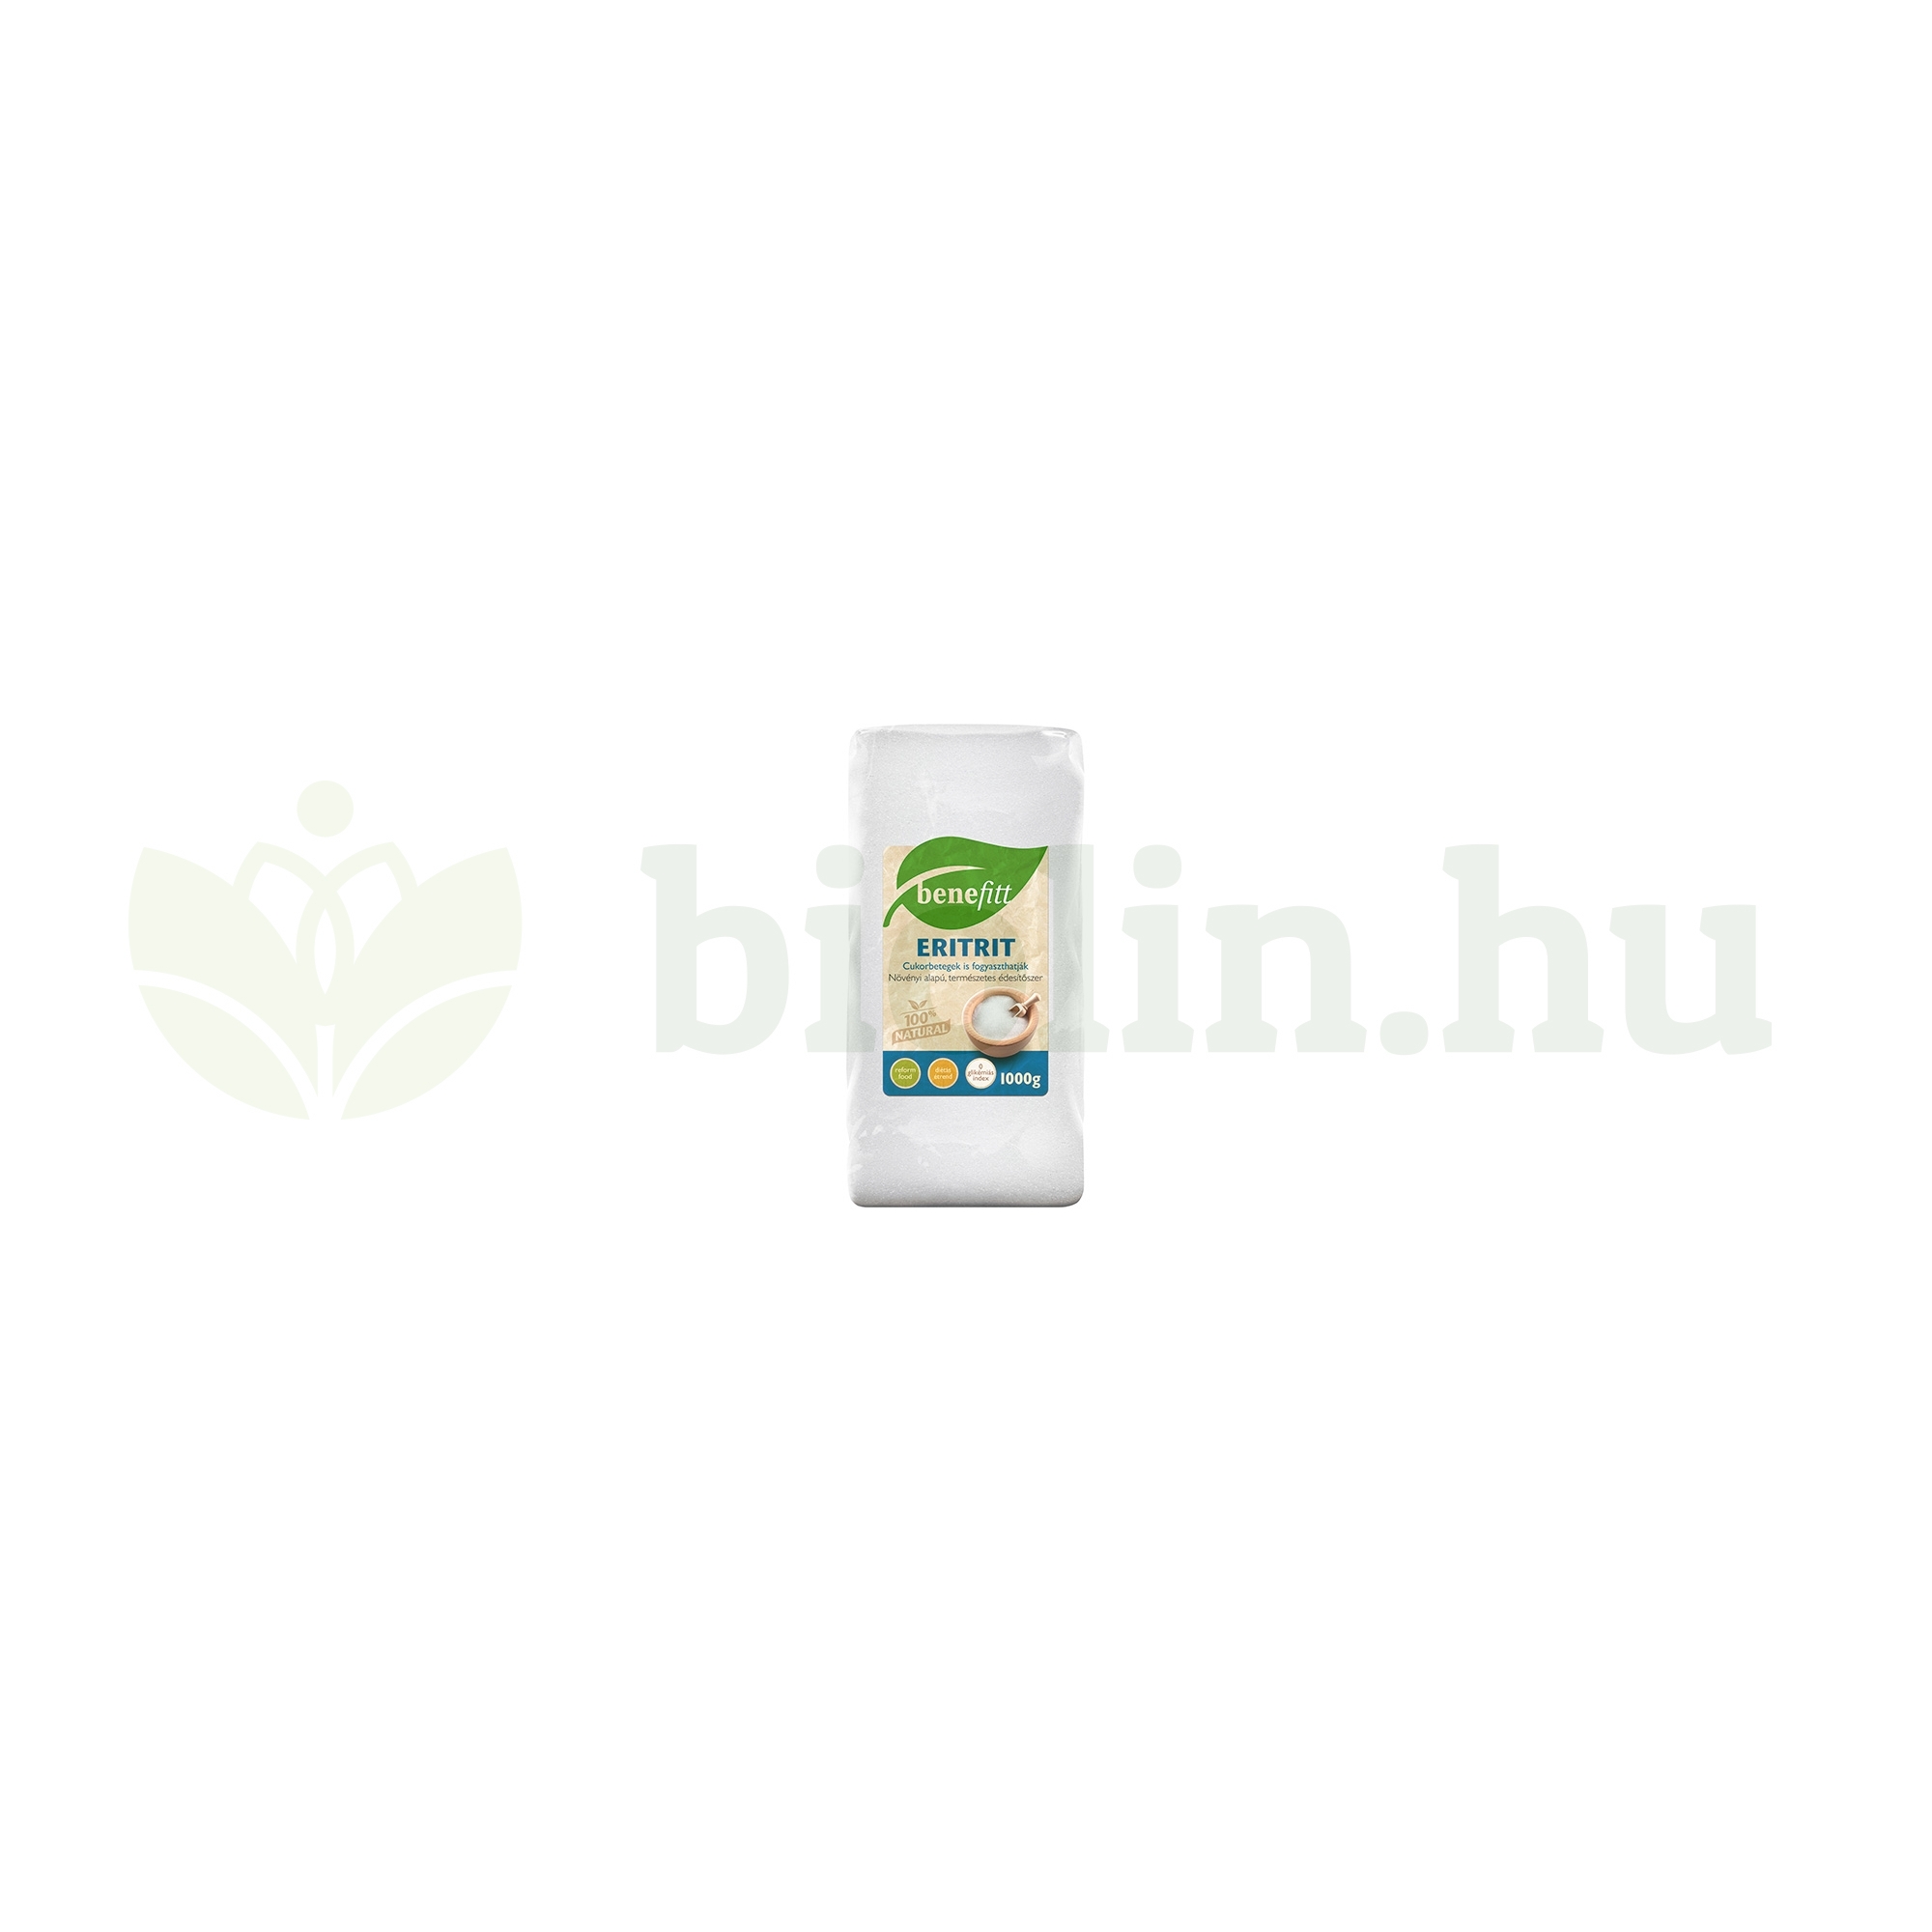  BENEFITT ERITRIT 1000G 0 kalóriás, növényi eredetű édesítőszer